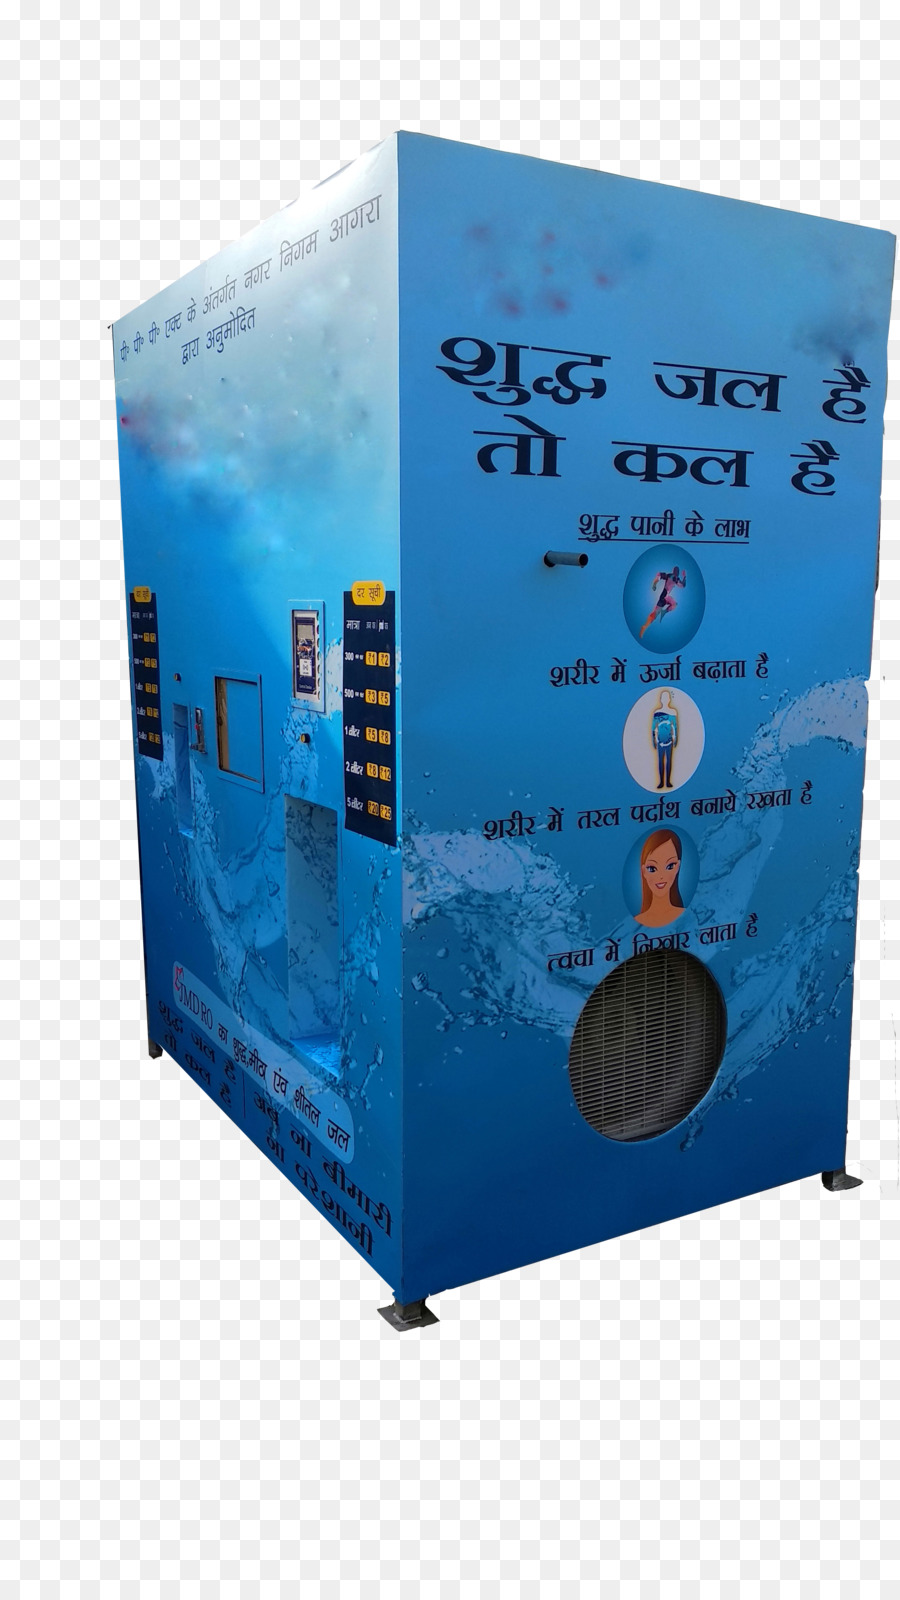 ABDUL KÄLTE-CENTER - Küchengeräte|Kaffee-Tee-Automaten-Hersteller-Delhi Automaten GDG & Co. Befürworter Google Developer Groups - Automaten